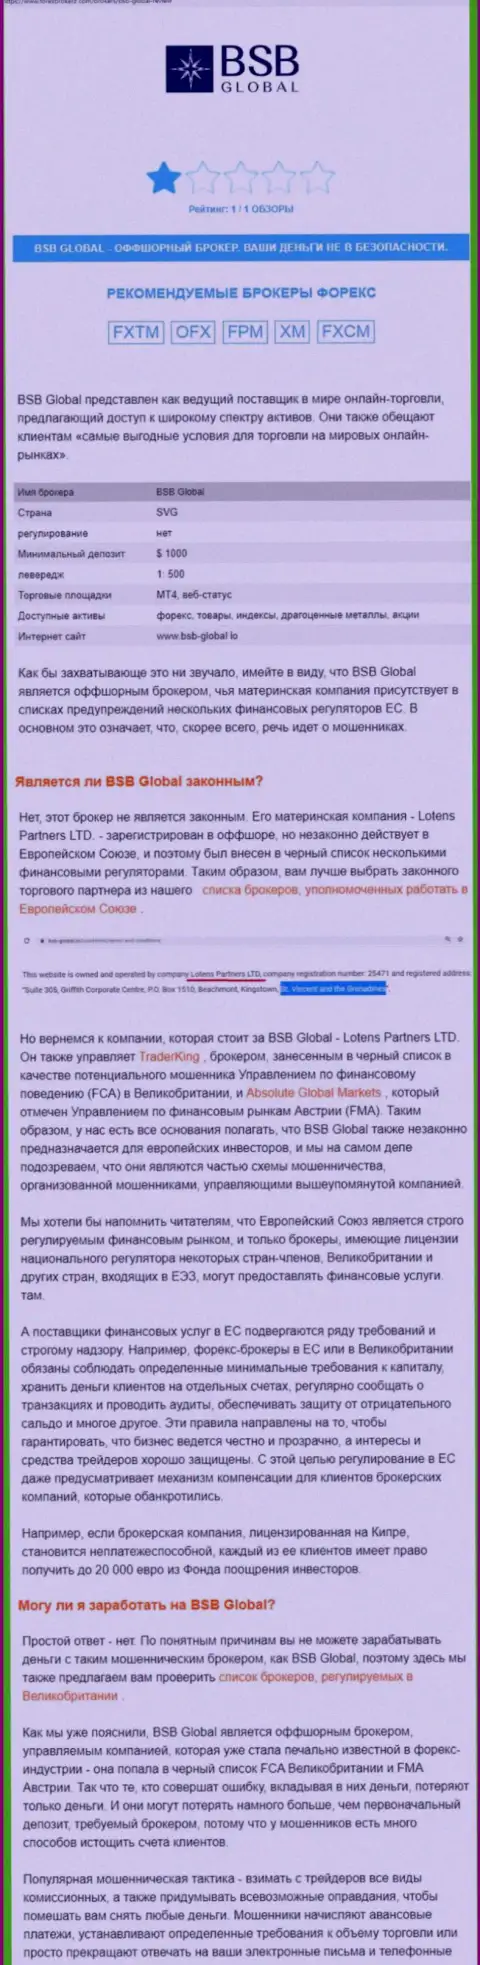 Не опасно ли сотрудничать с конторой BSB Global ? (Обзор неправомерных действий конторы)